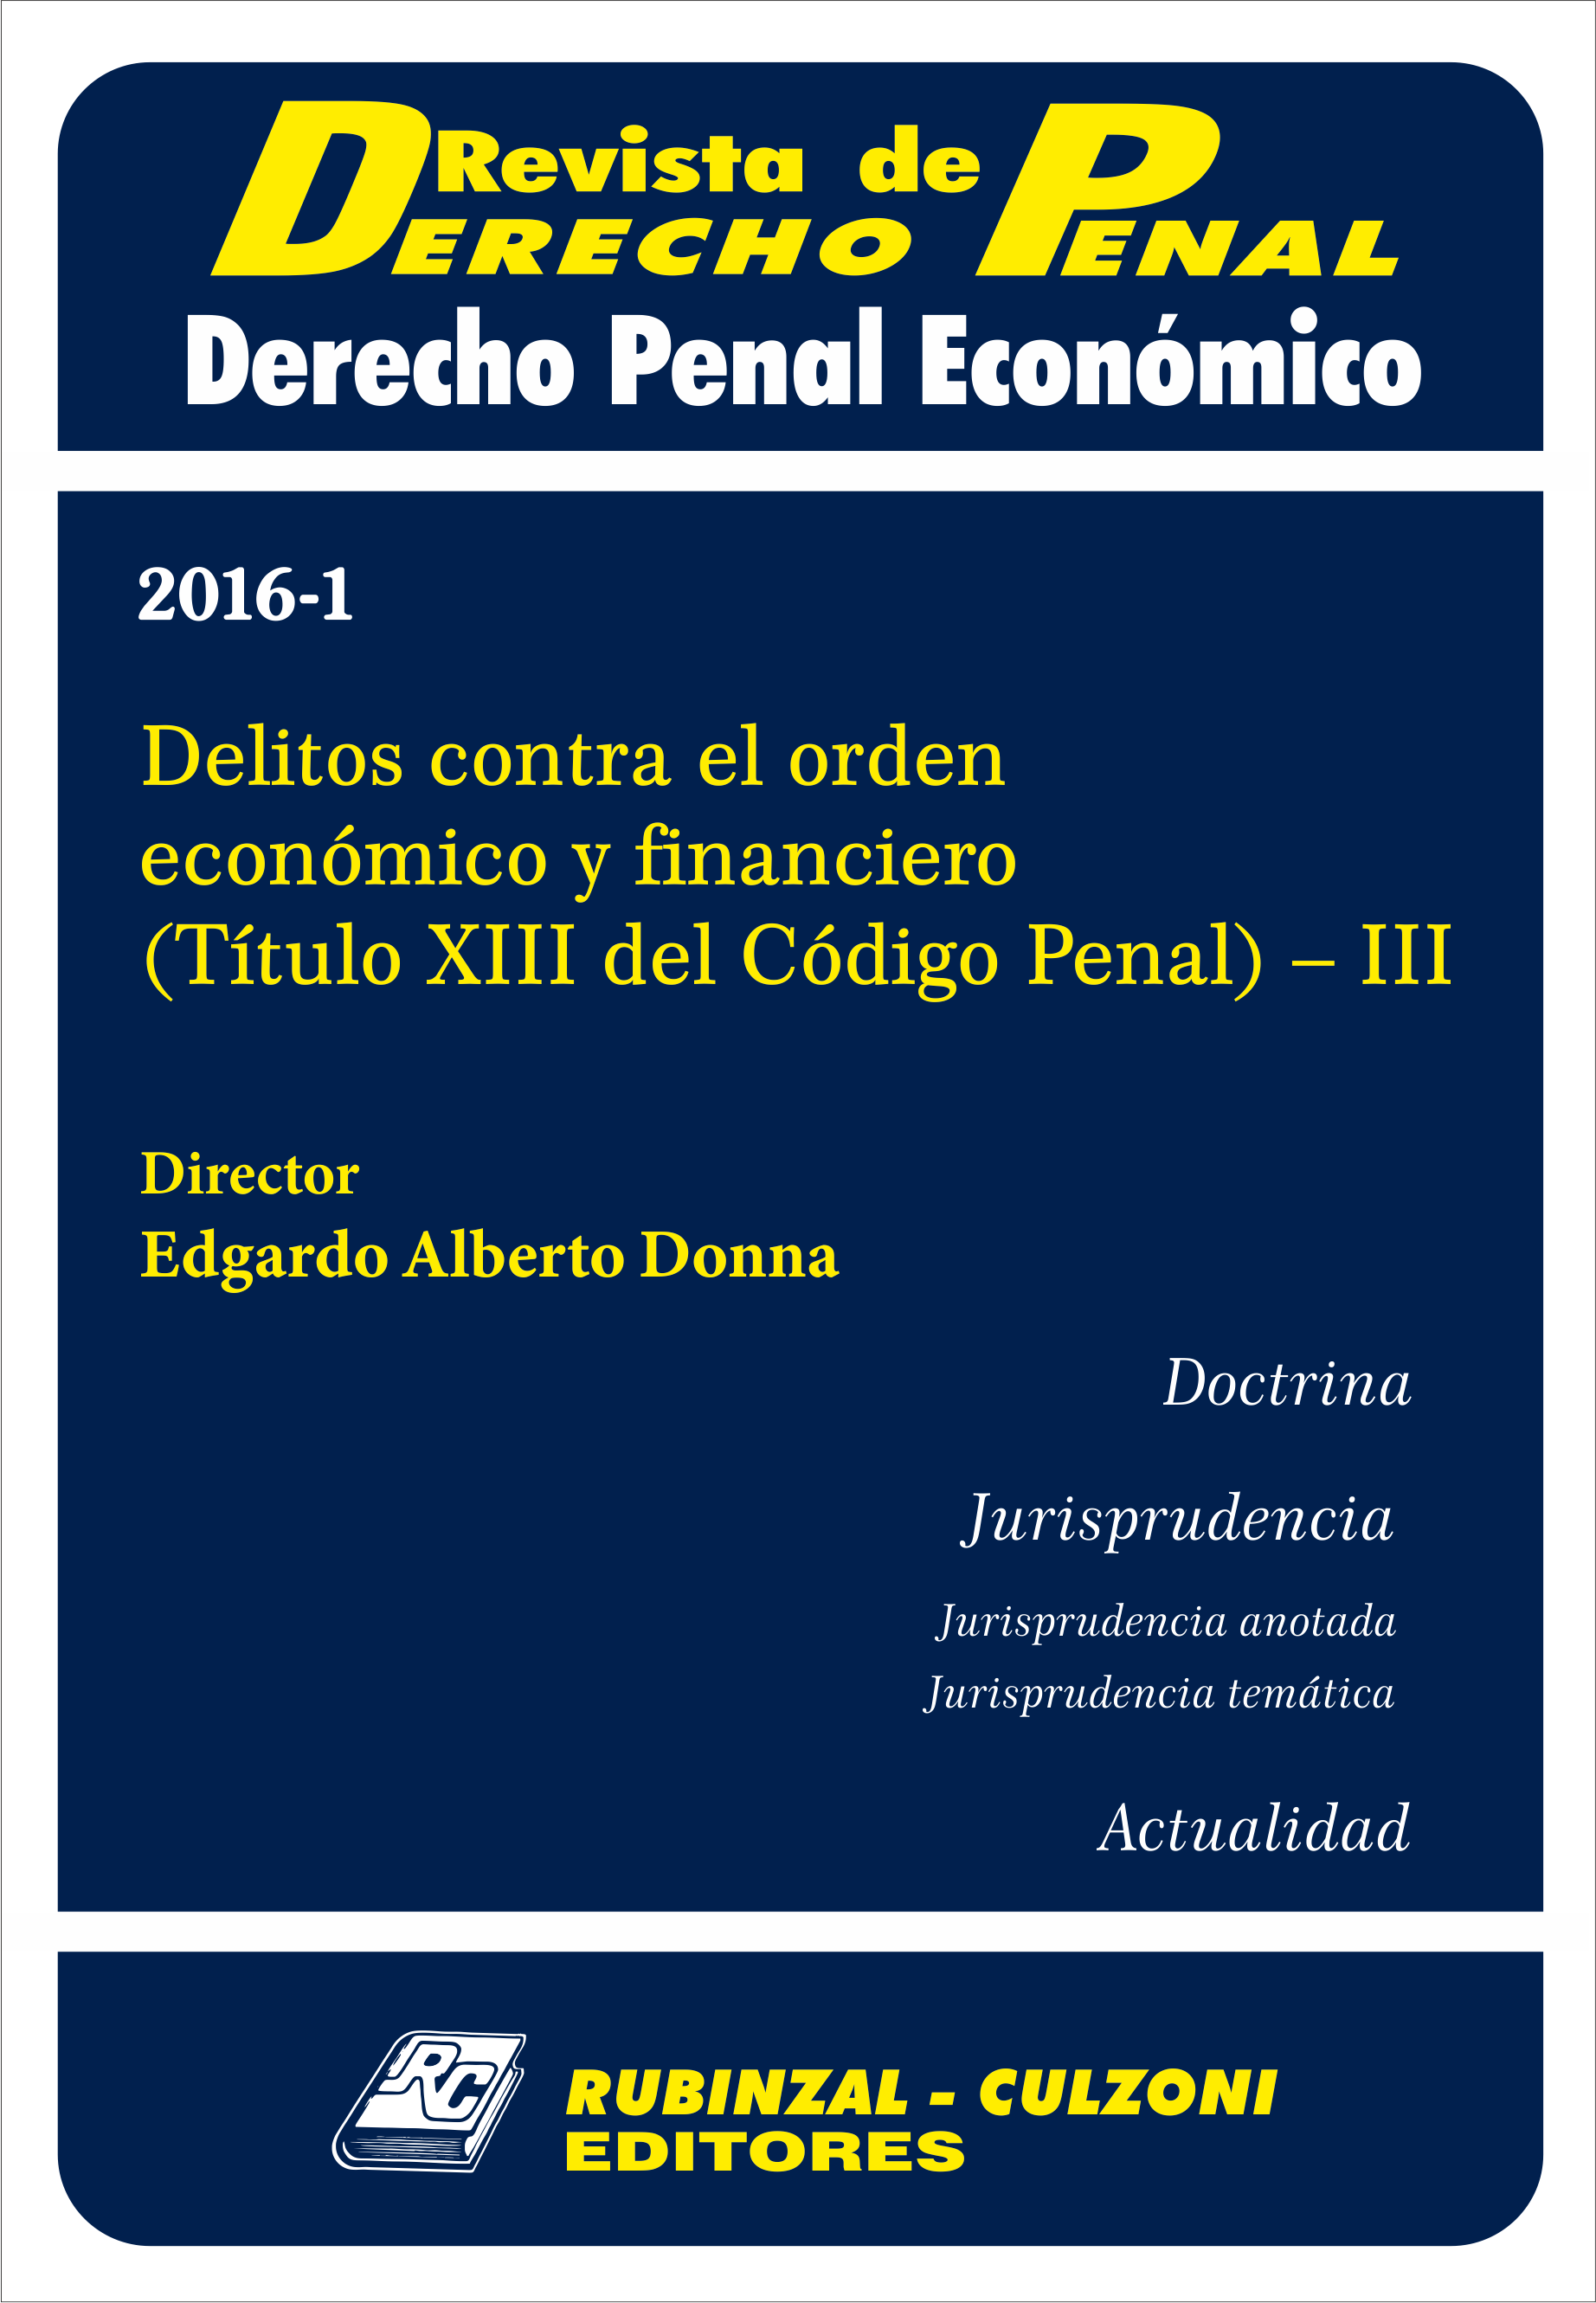 Revista de Derecho Penal Económico - Delitos contra el orden económico y financiero (Título XIII del Código Penal) - III